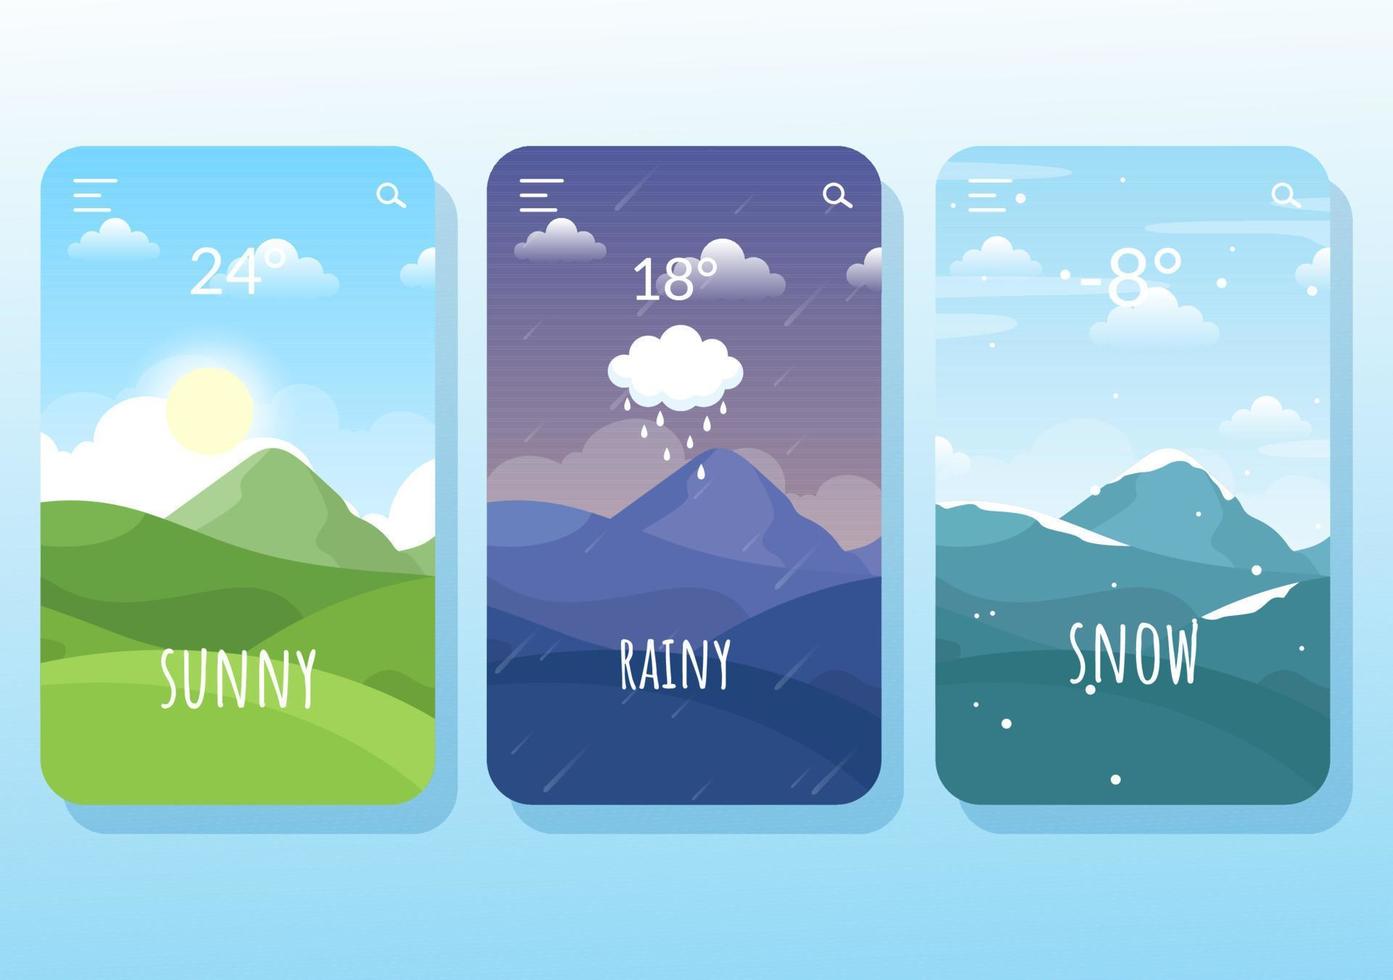 types de conditions météorologiques avec ensoleillé, nuageux, venteux, pluvieux, neigeux et orageux dans le modèle illustration plate de dessin animé dessiné à la main vecteur